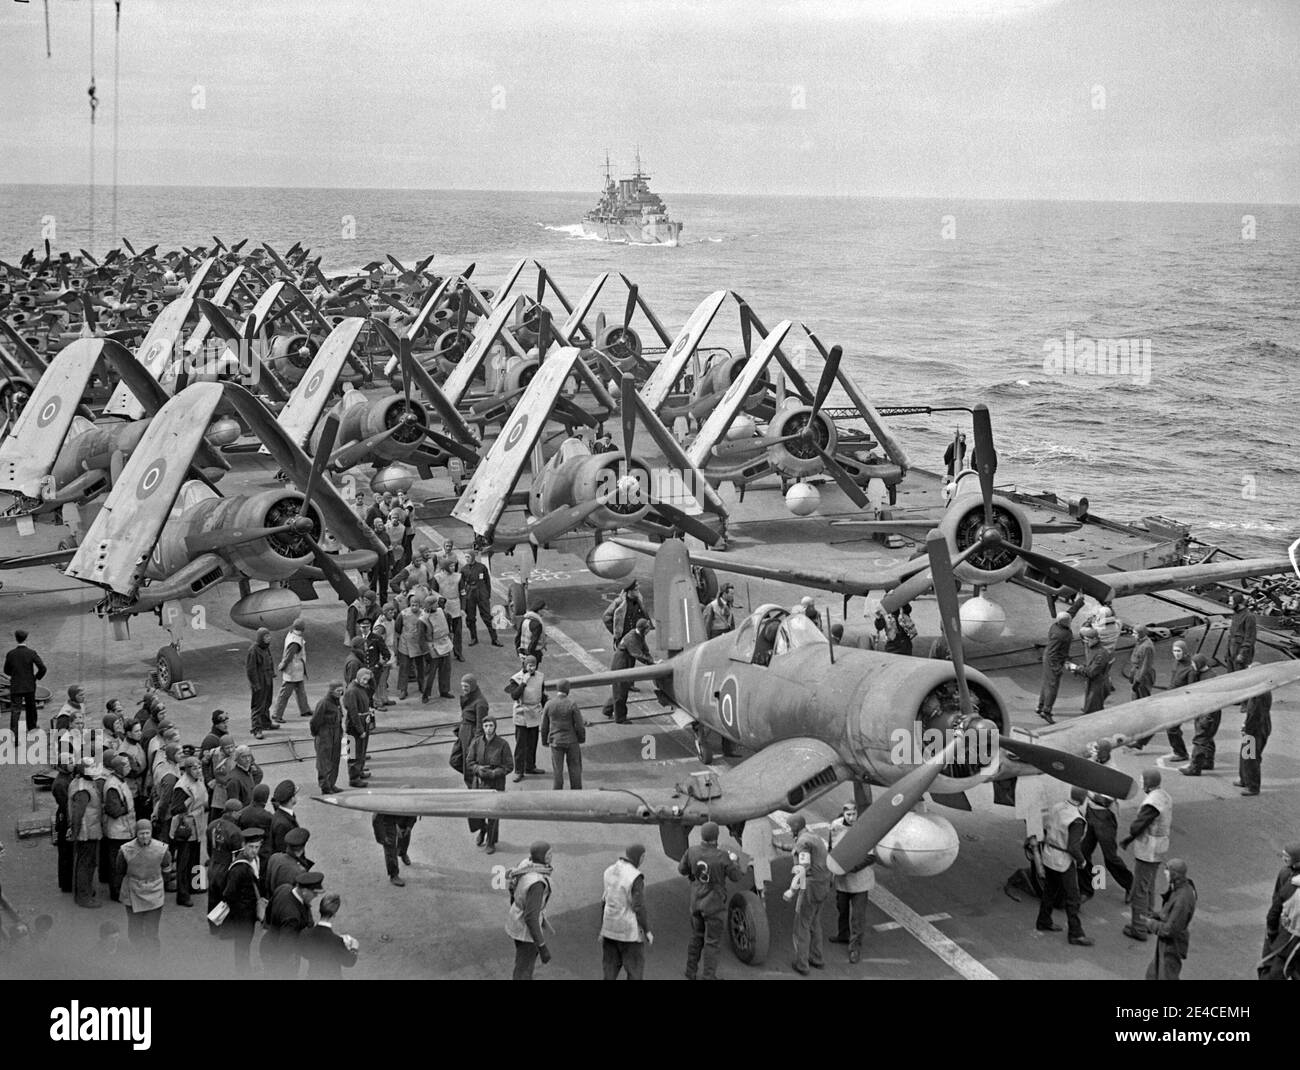 Fleet Air Arm Chance-Vought Corsair-Kämpfer, mit Fairey Barracuda Torpedo-Bomber hinter sich, reichten auf dem Flugdeck der HMS Formidable, vor Norwegen, 1944 Stockfoto